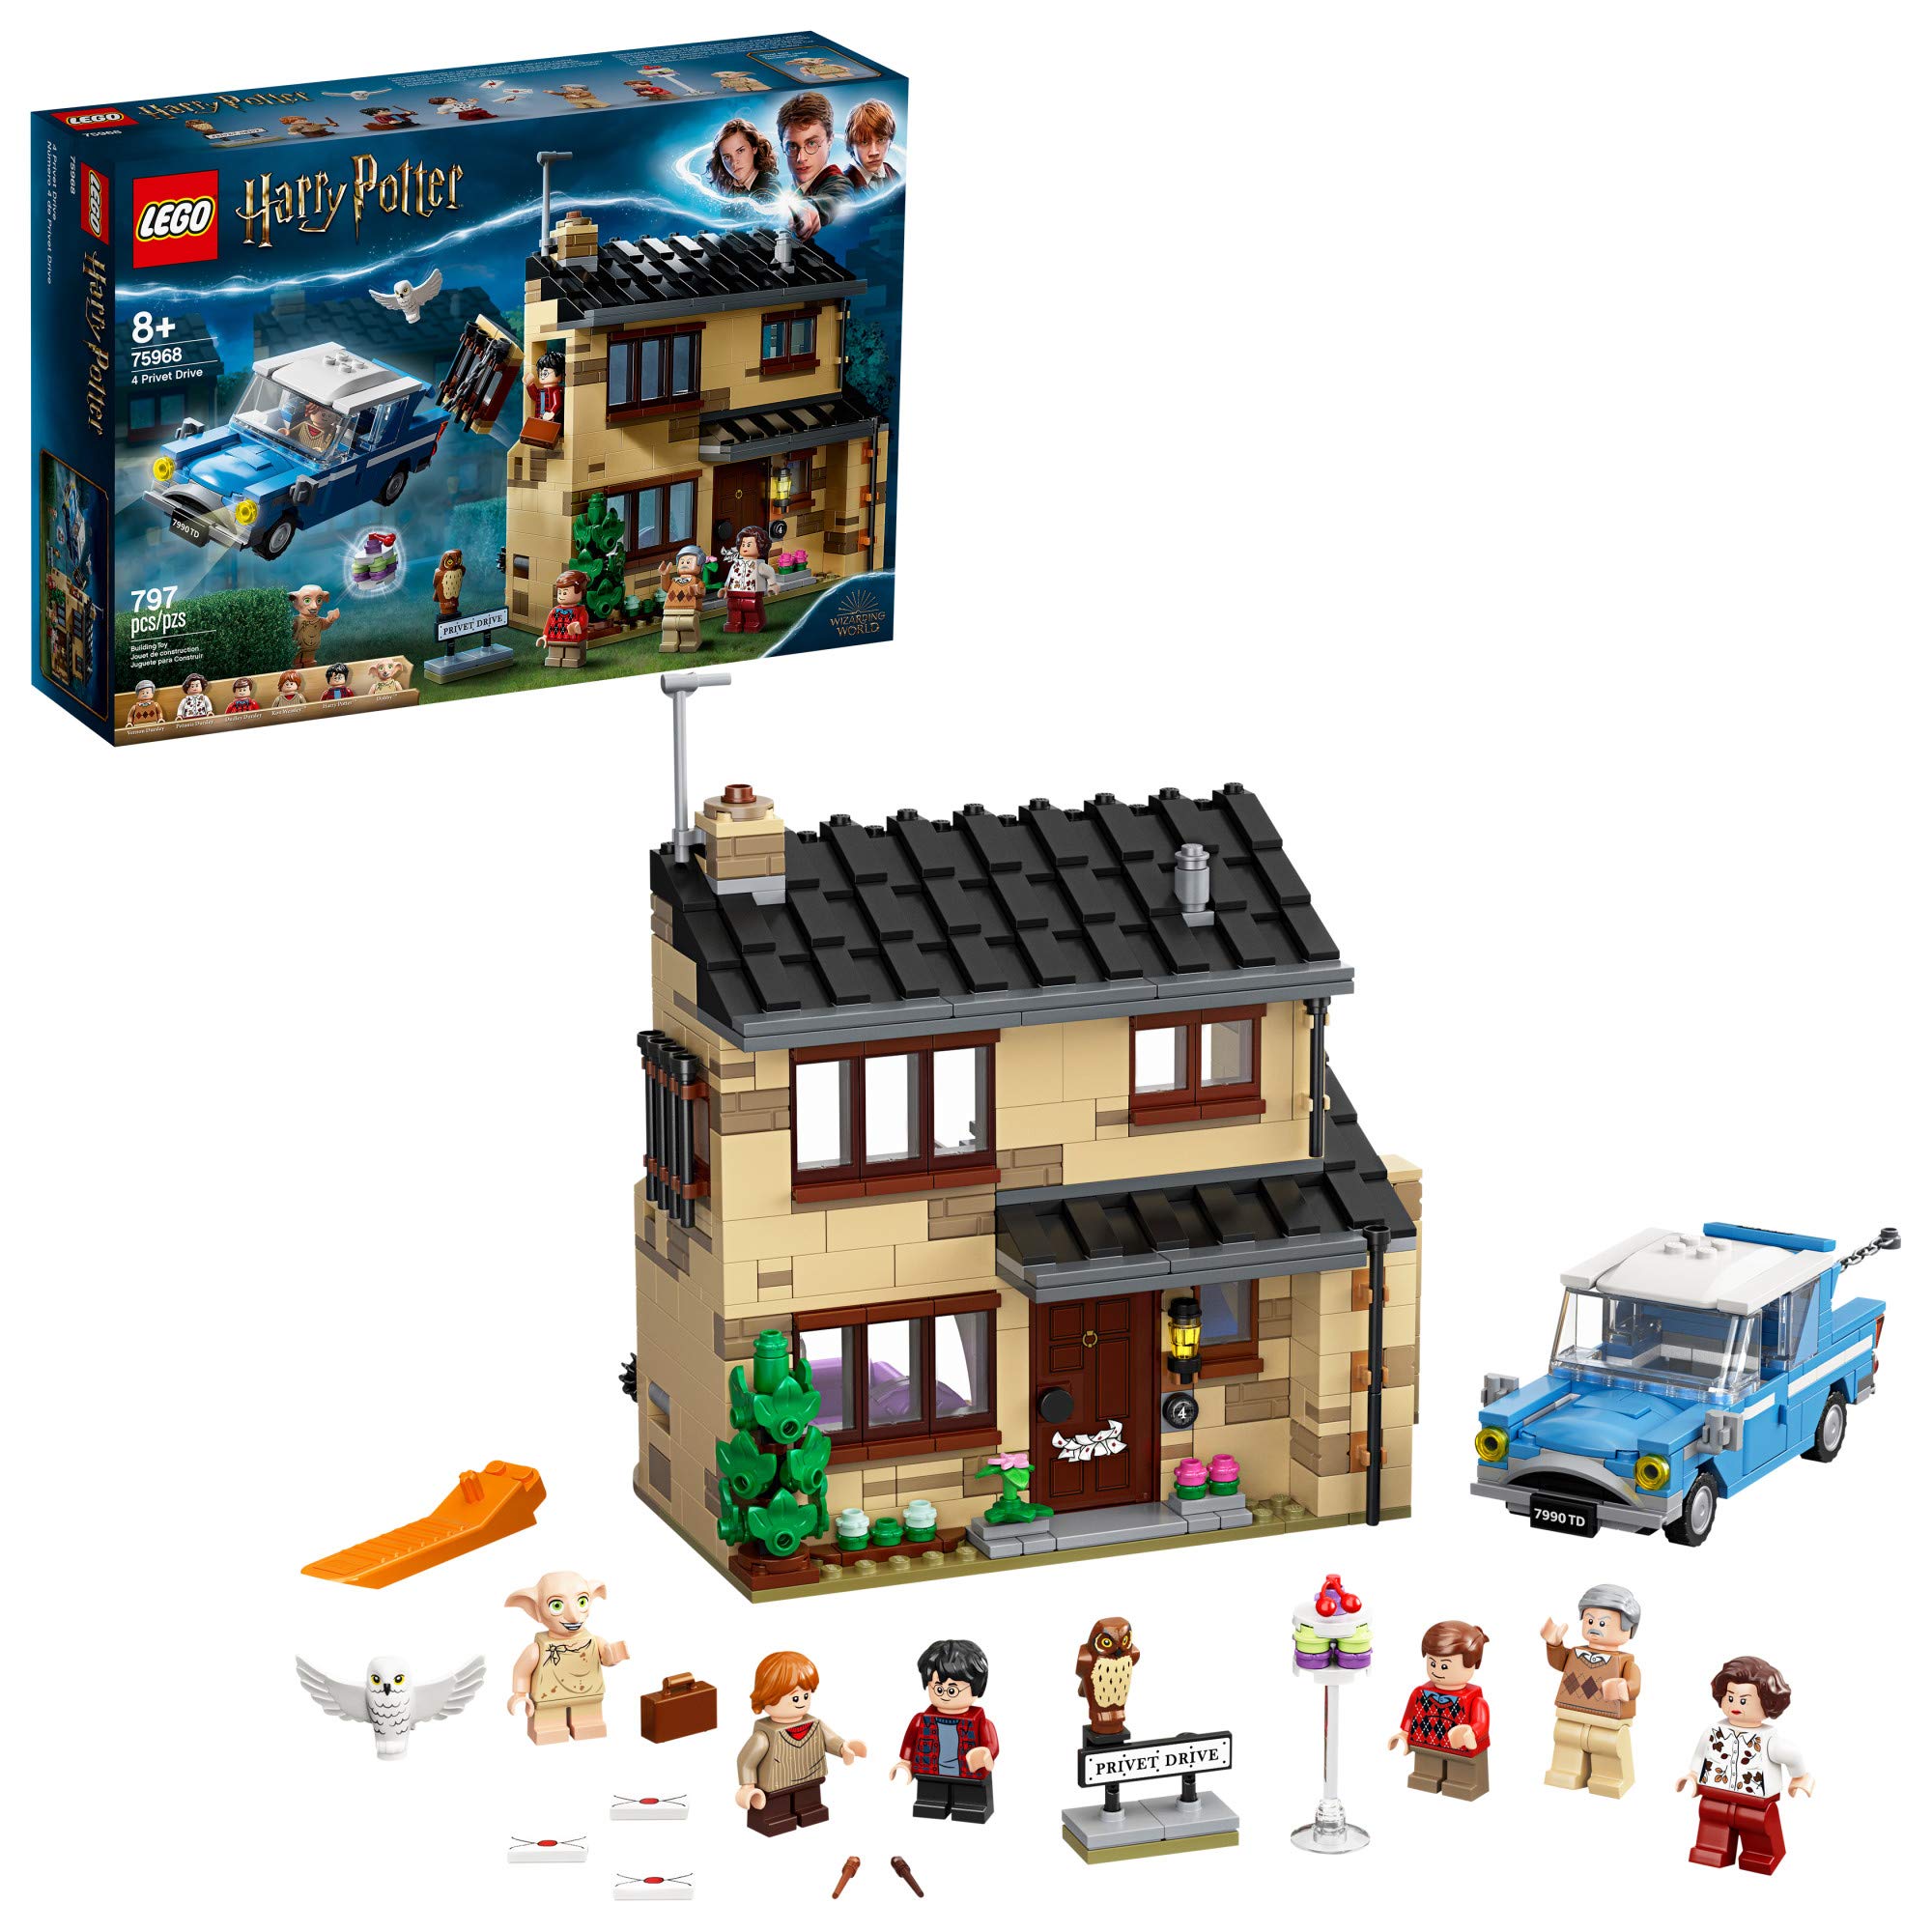 LEGO Harry Potter 4 Privet Drive 75968, (797 Pieces) (7673359040750)